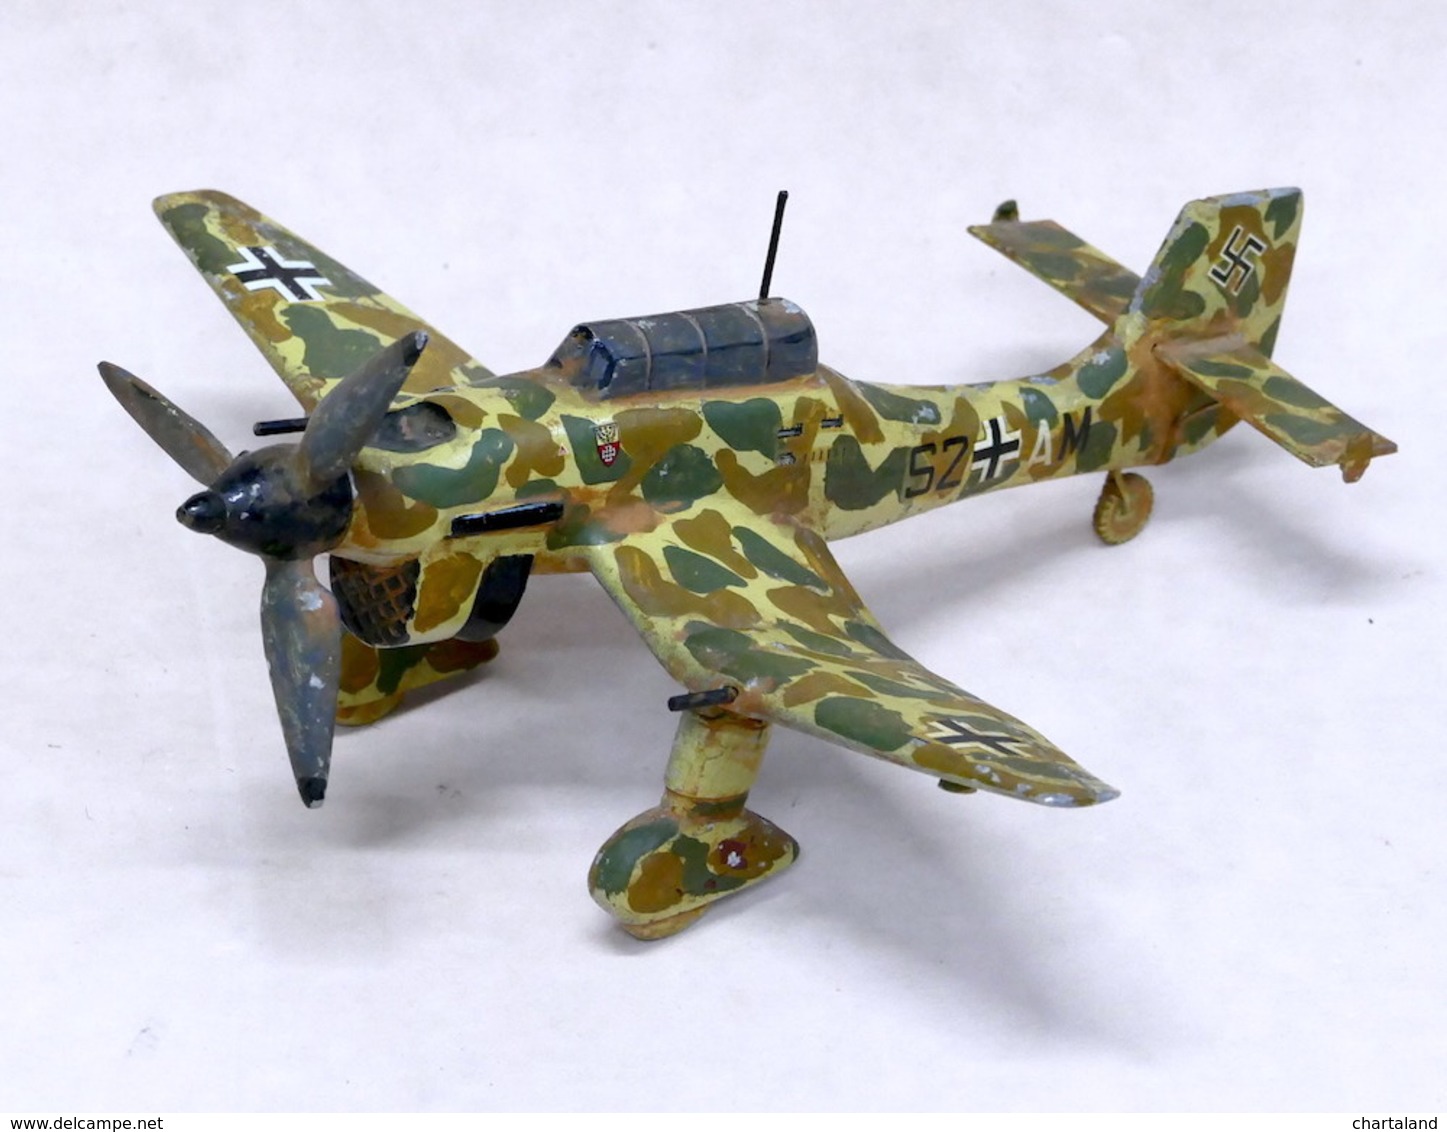 Modellismo aereo Modellino Stuka anni '40 - in metallo - unico esemplare:  Buone Rilegato